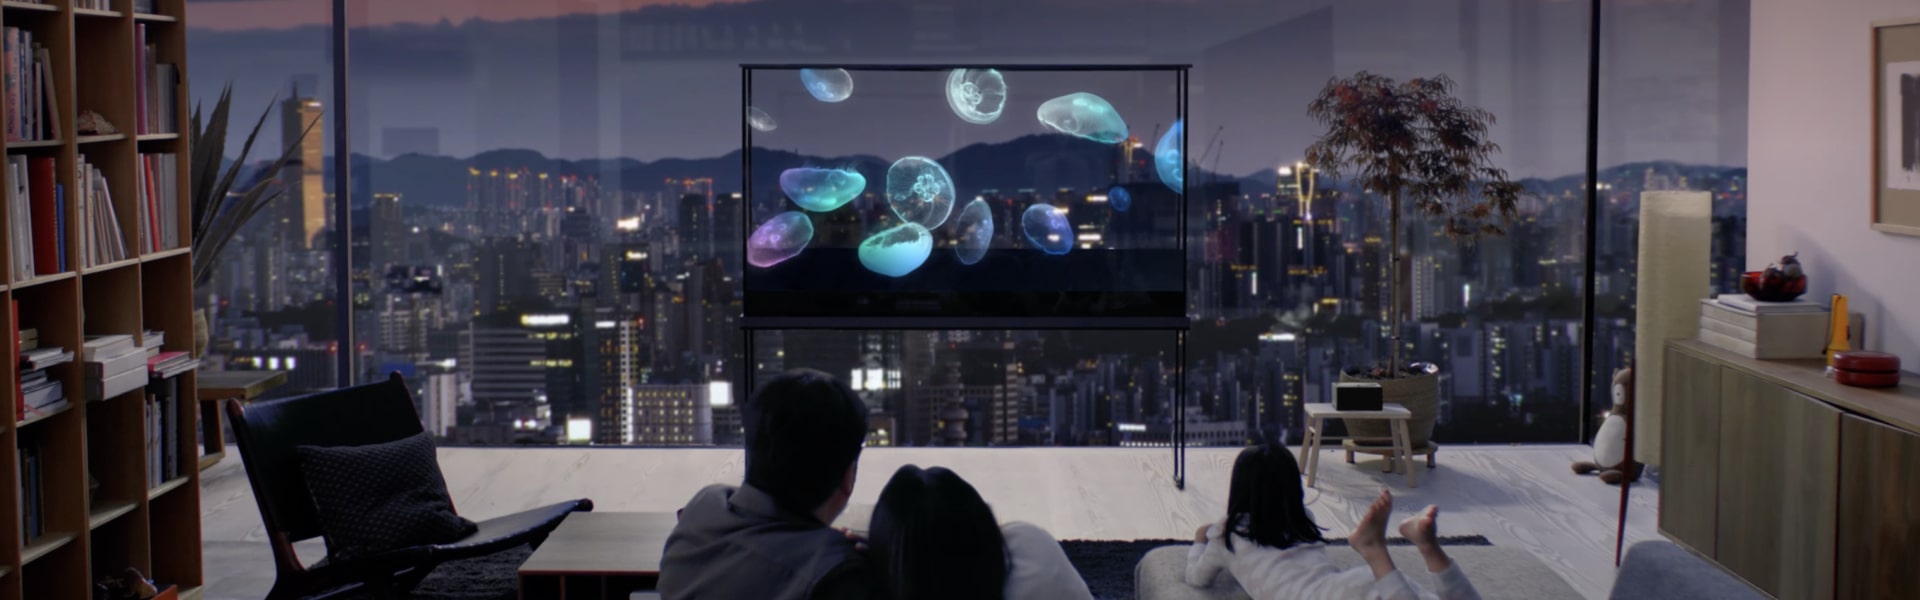 Una familia disfruta de un LG Oled T con una medusa flotando sobre él, mientras el paisaje urbano brilla a través de la pantalla transparente.